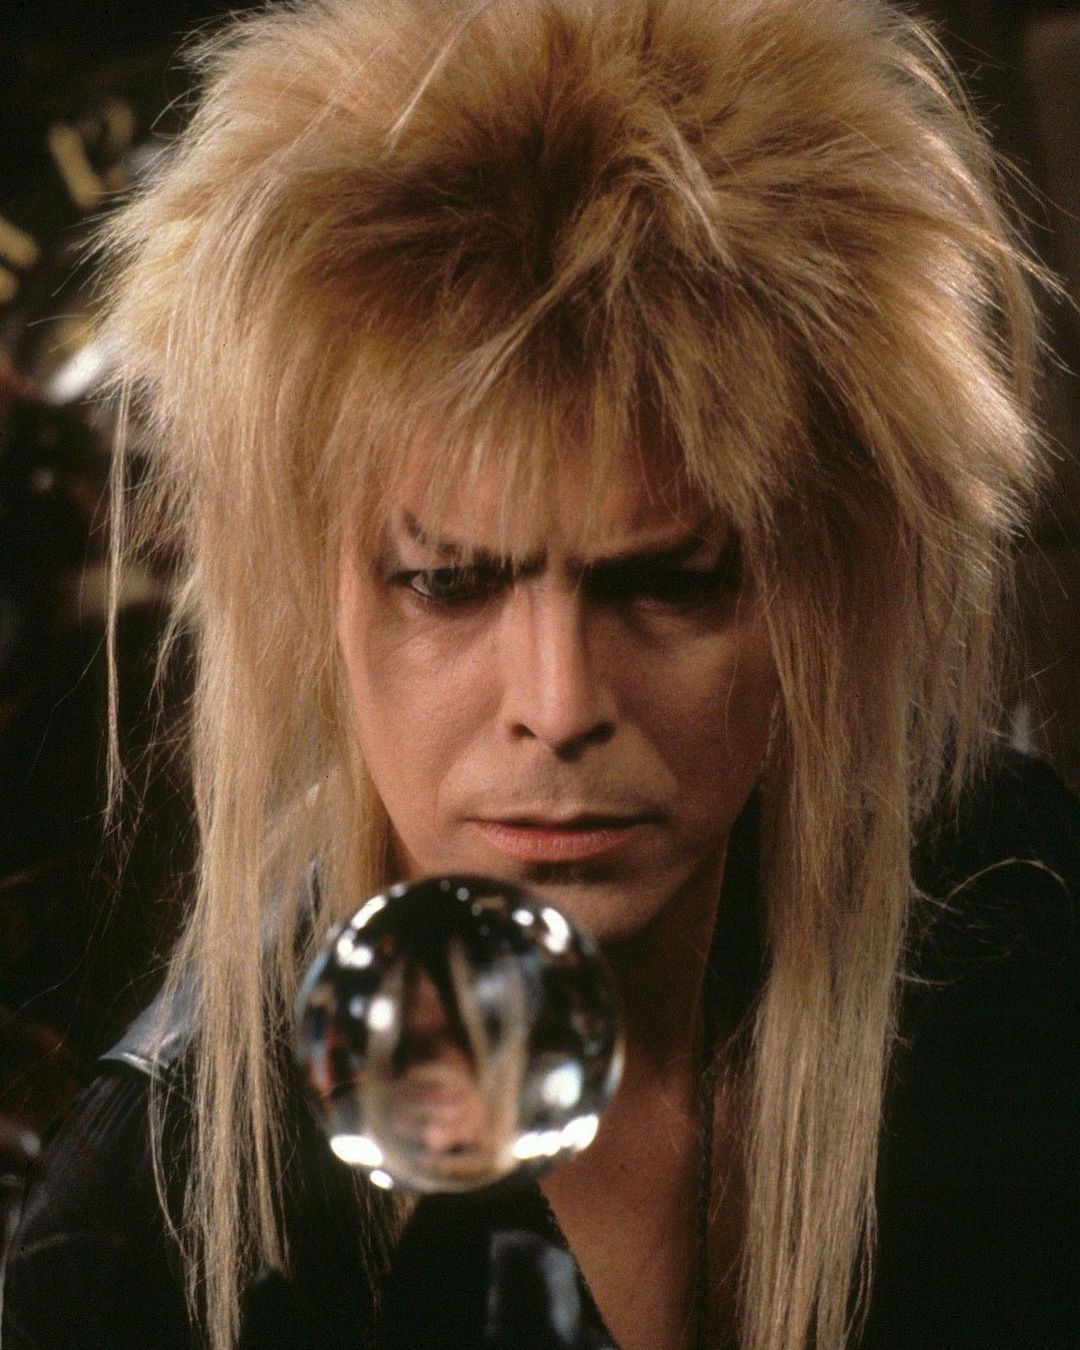 David Bowie, peinados de los 80